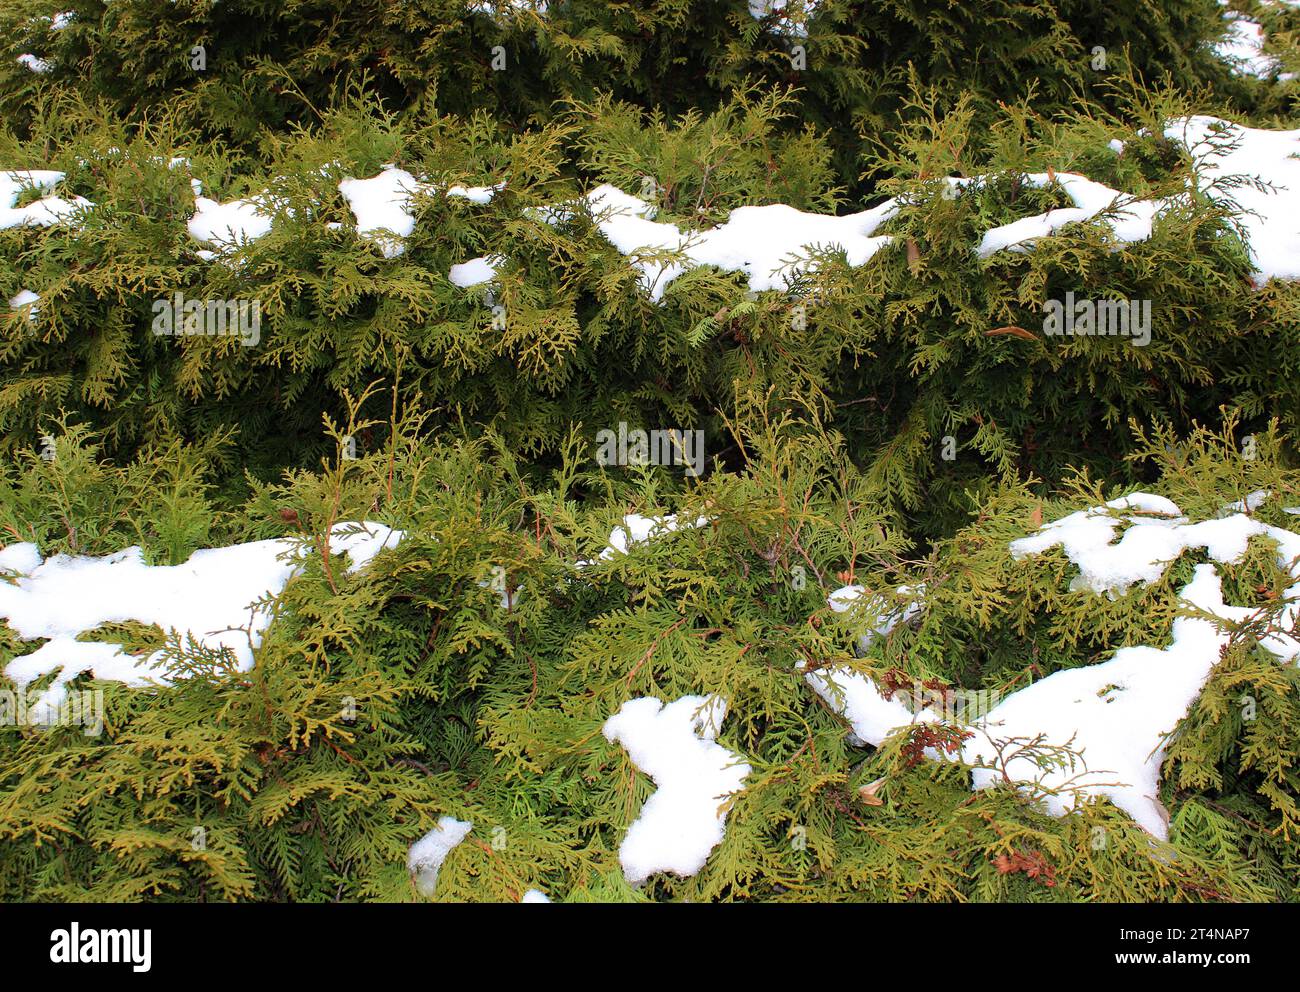 Immergrüne Hecke in Form von Stufen, bedeckt mit Schneekappen Textur Hintergrund Stockfoto